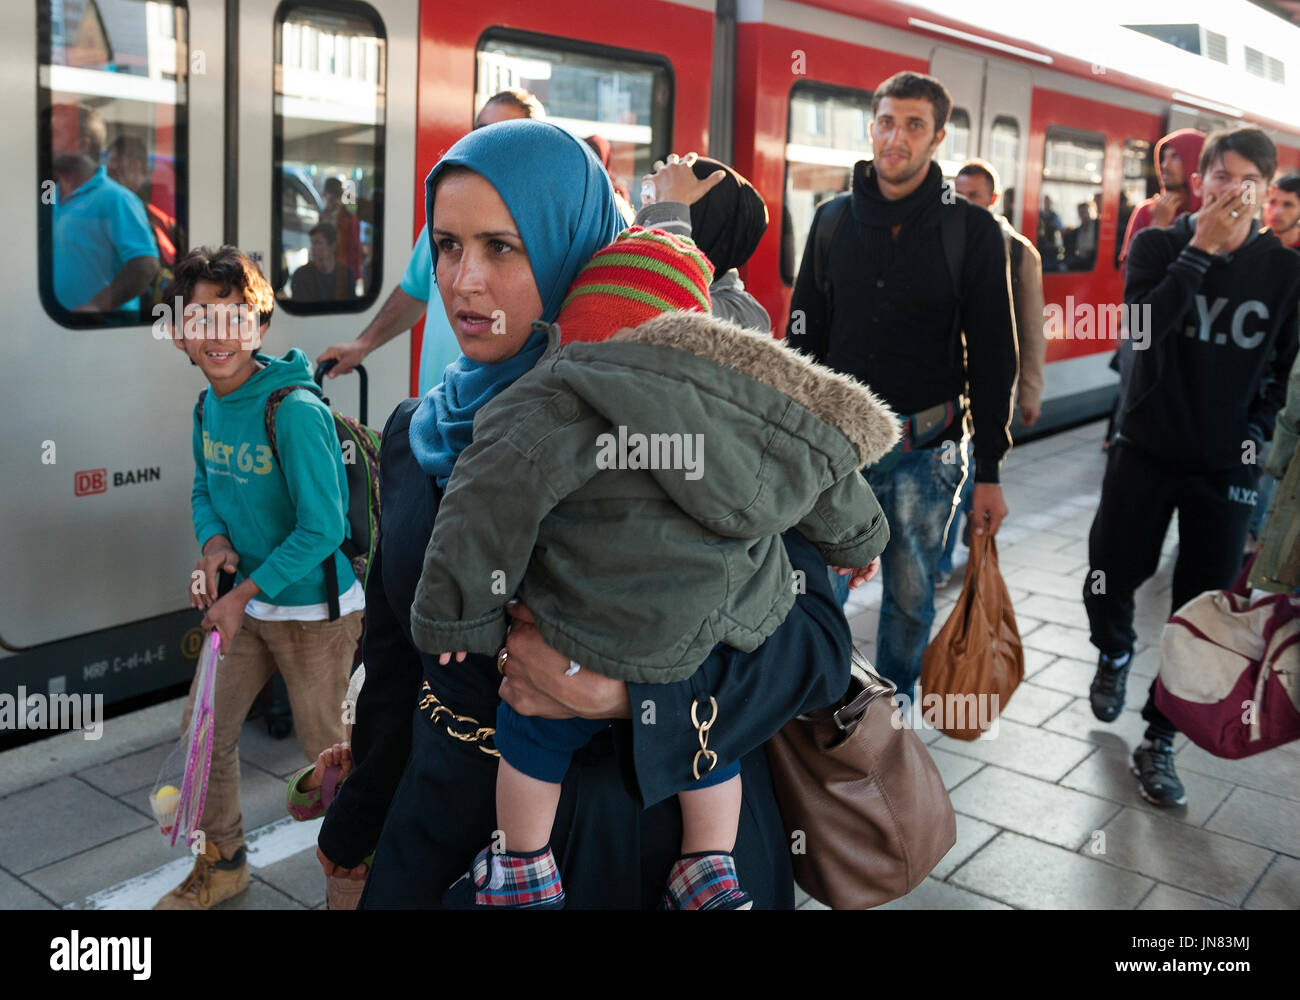 Munich, Alemania - 10 de septiembre de 2015: la madre y la hija de Siria llegando en Munich. Son los refugiados que buscan asilo en Europa. Foto de stock